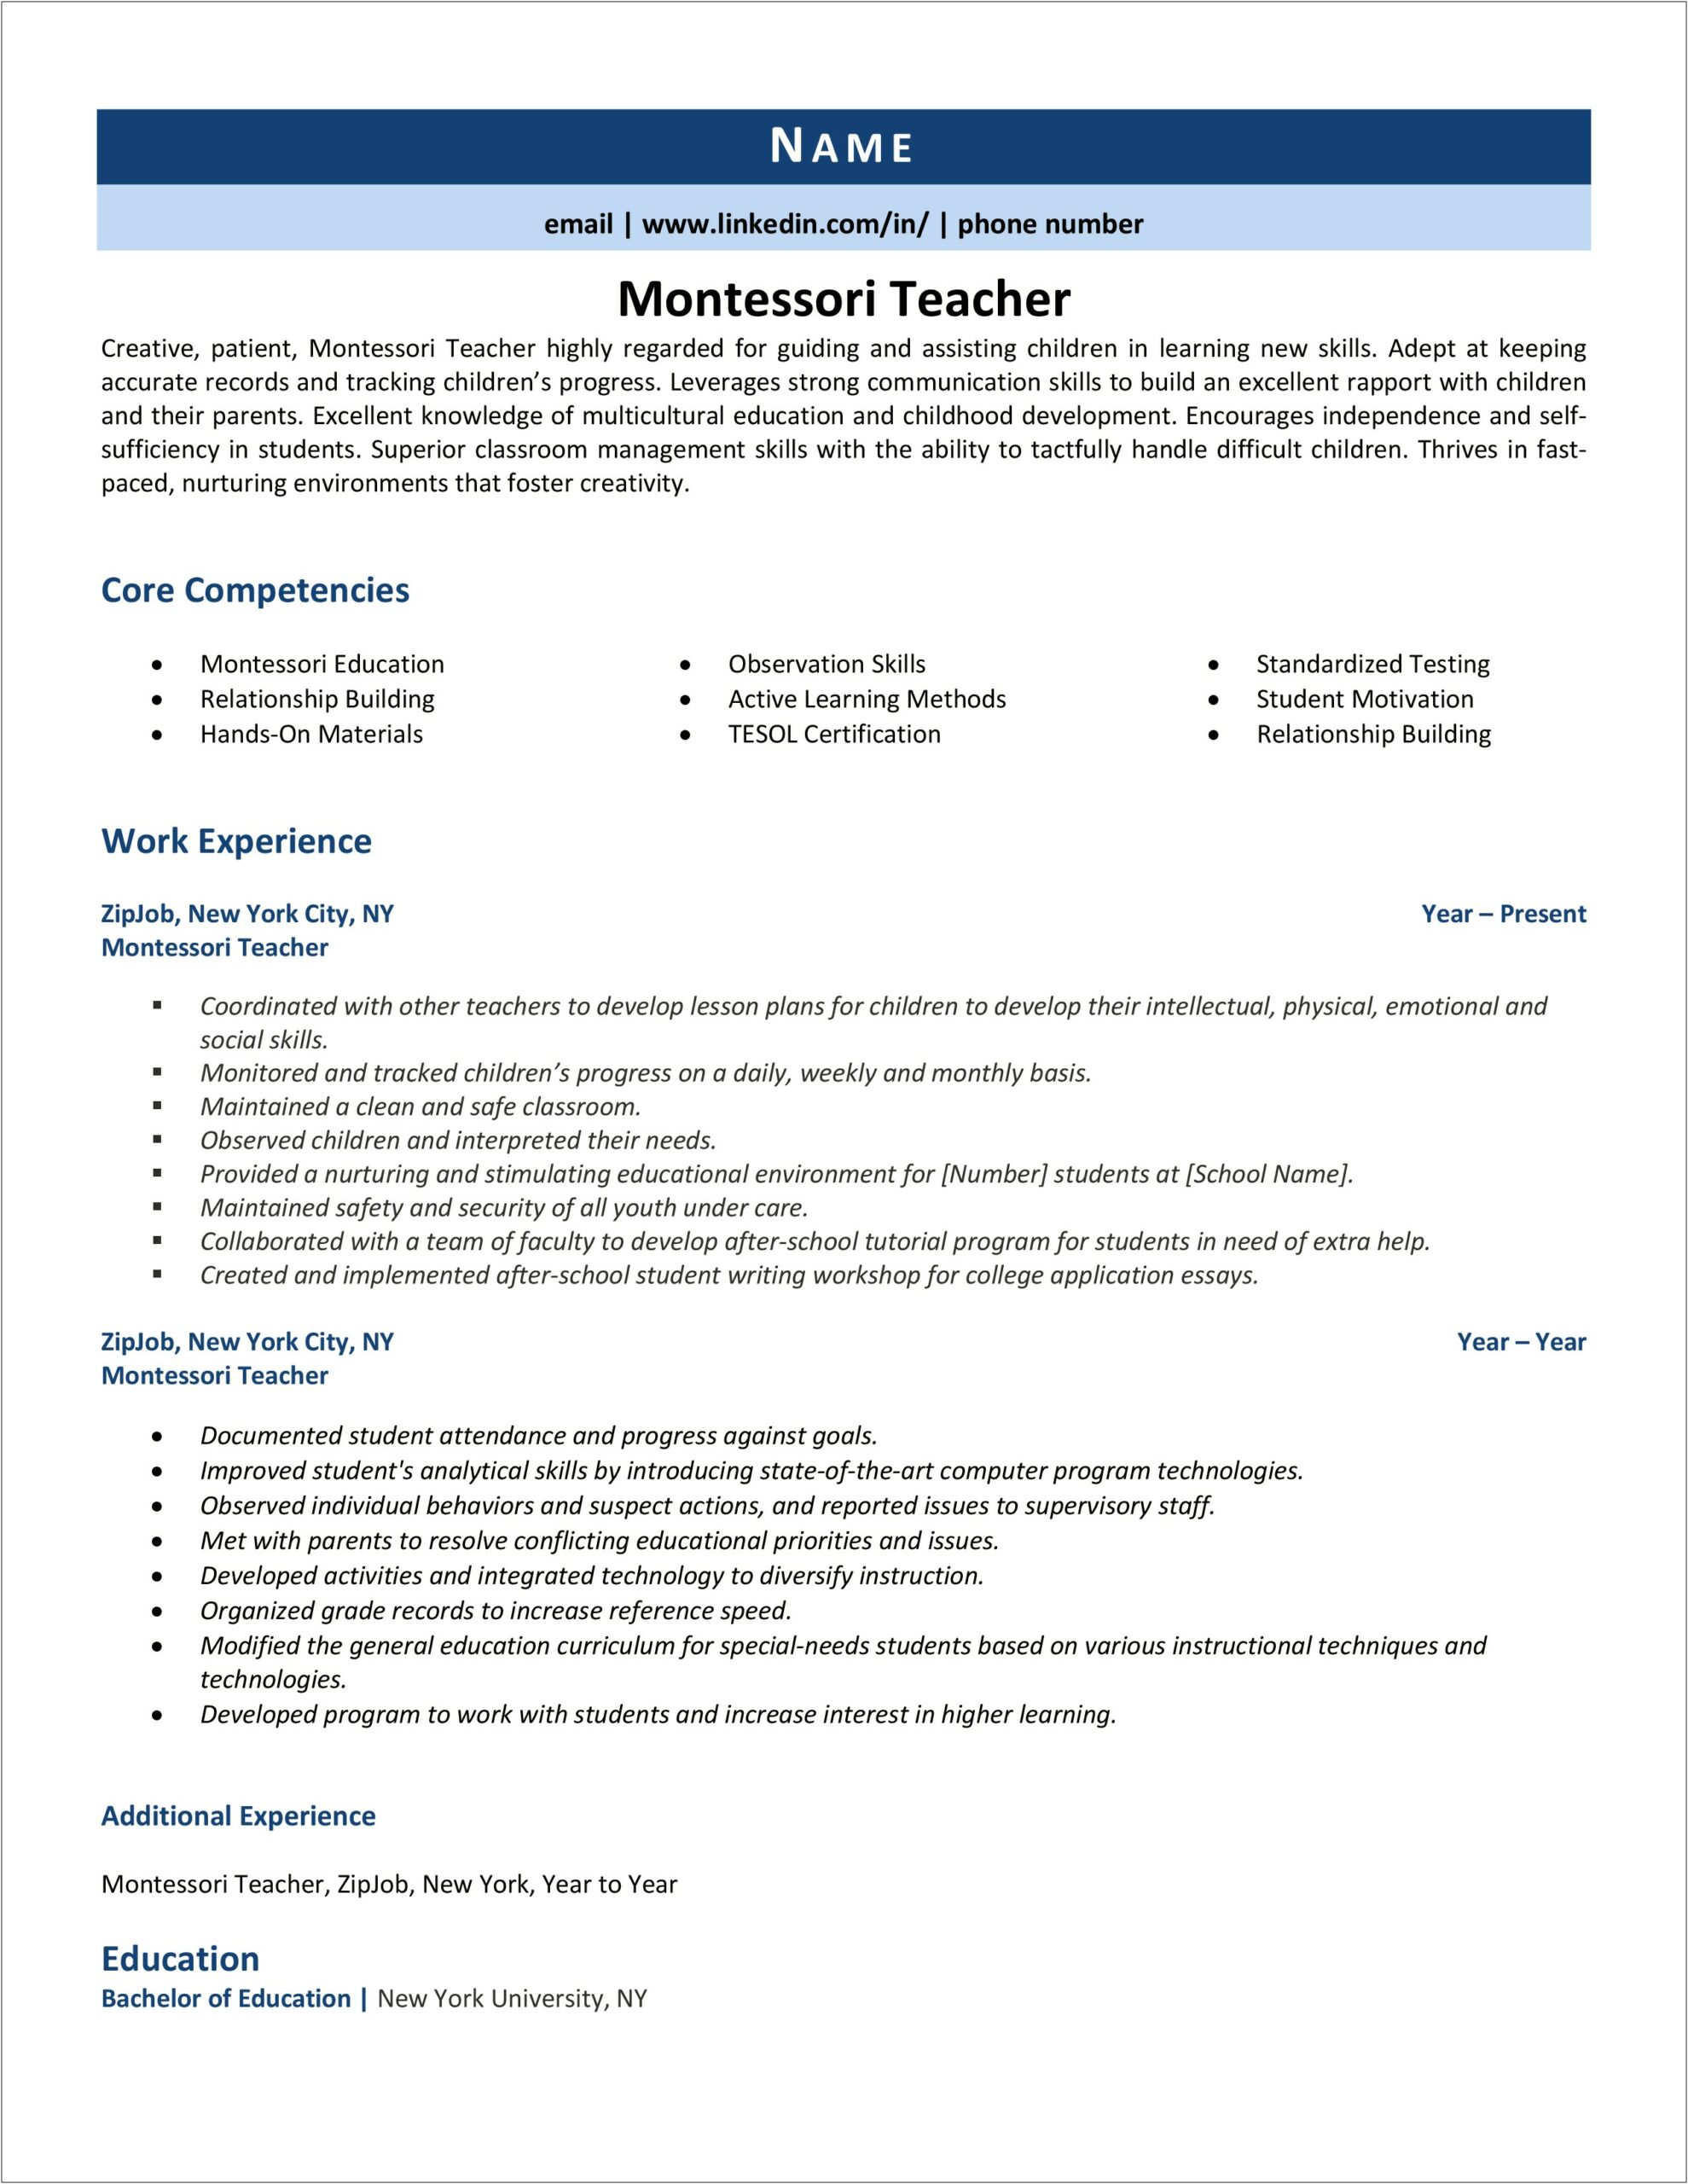 Montessori Teacher Assistant Resume Samples